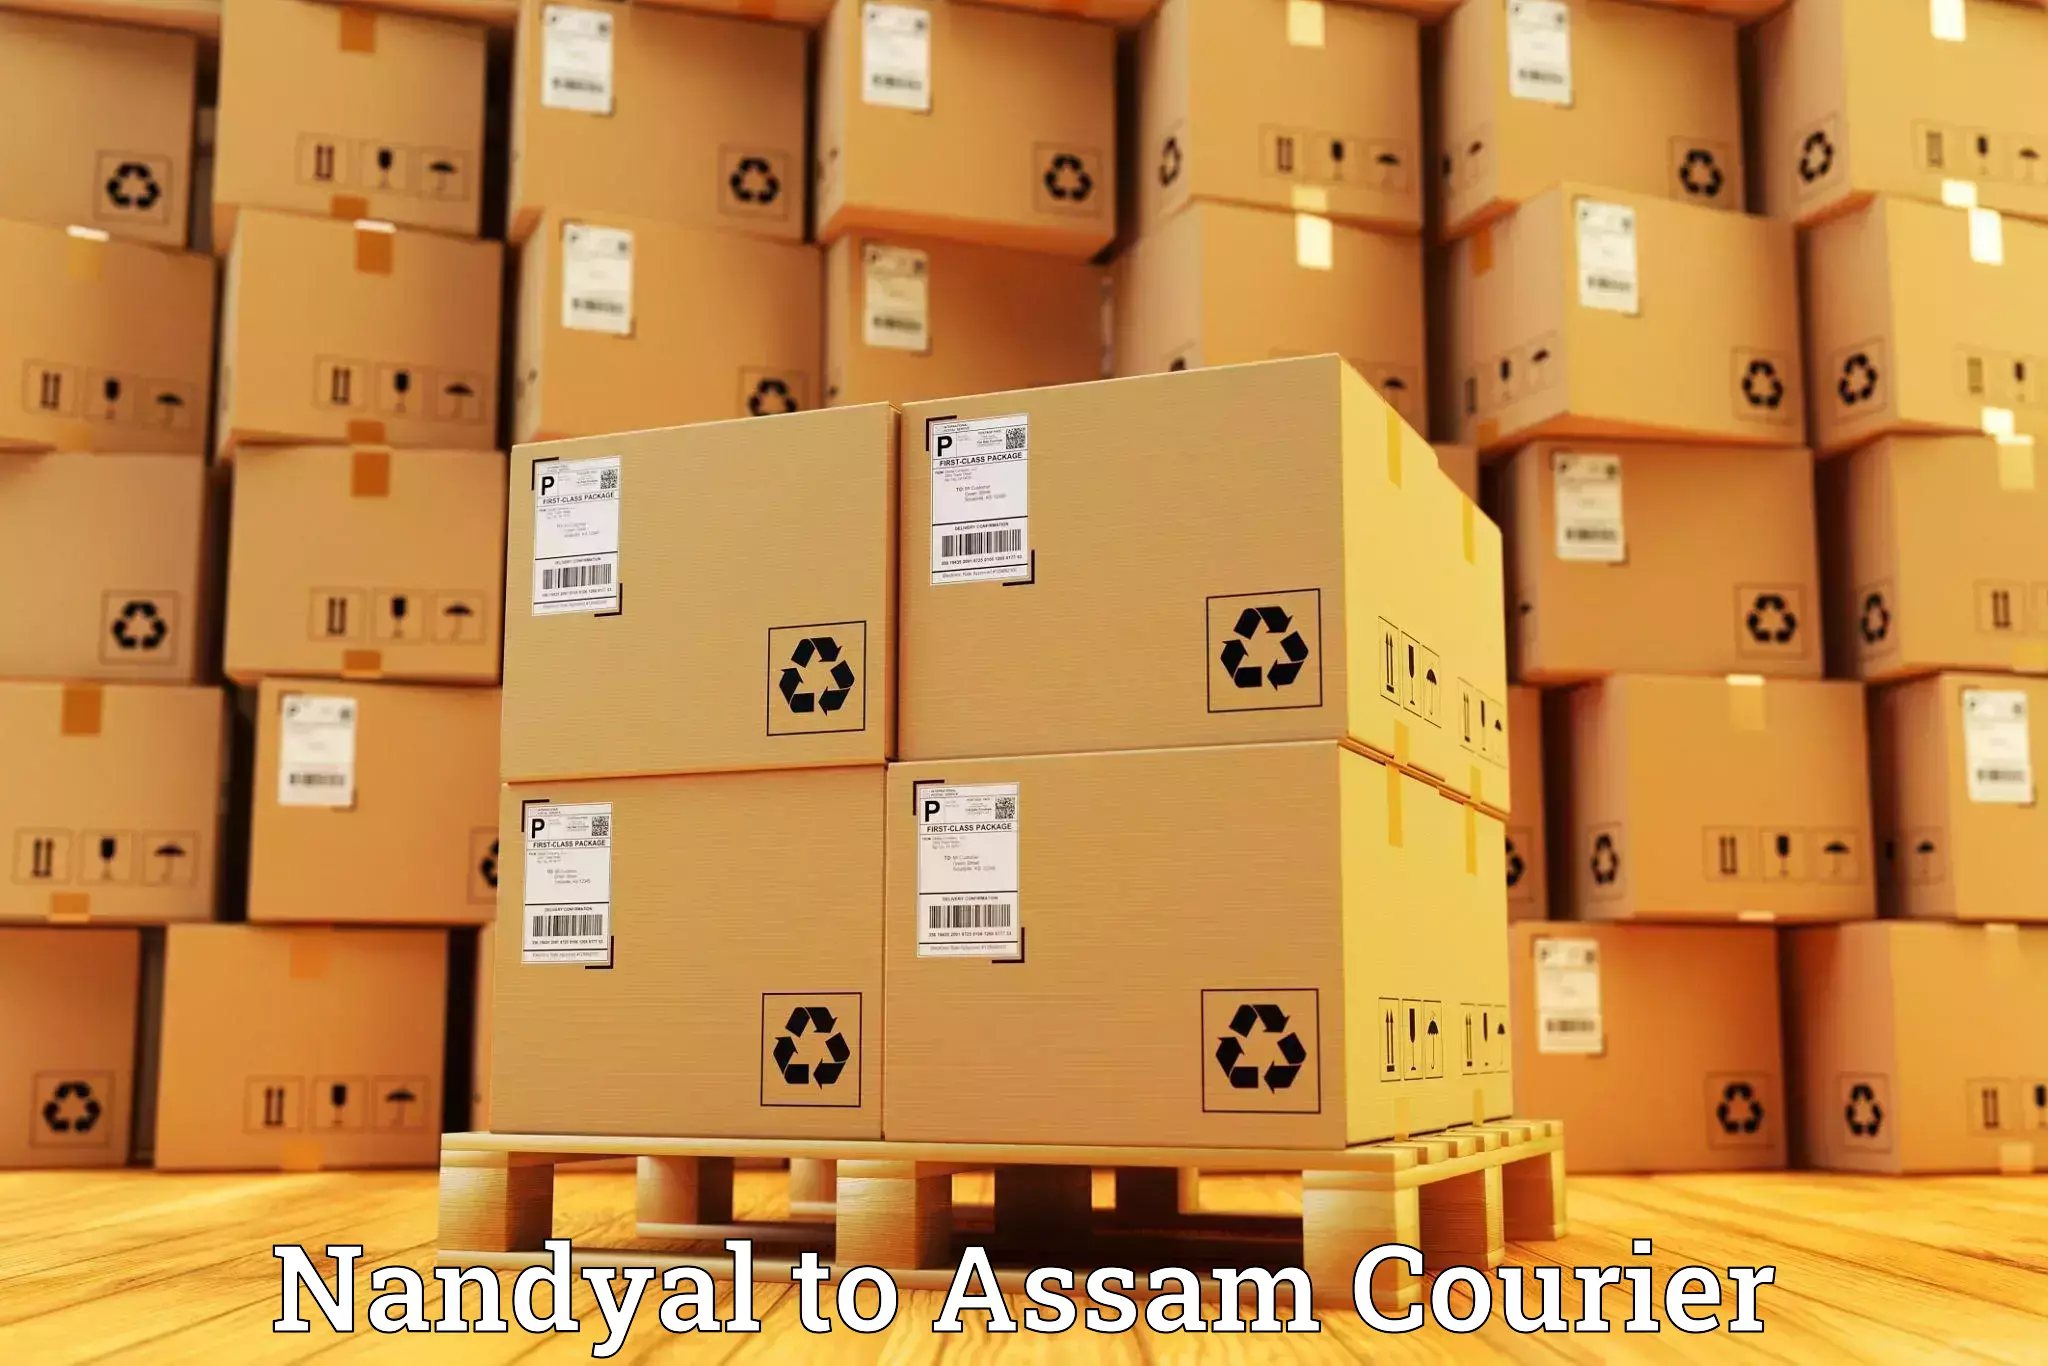 Logistics service provider Nandyal to Puranigudam